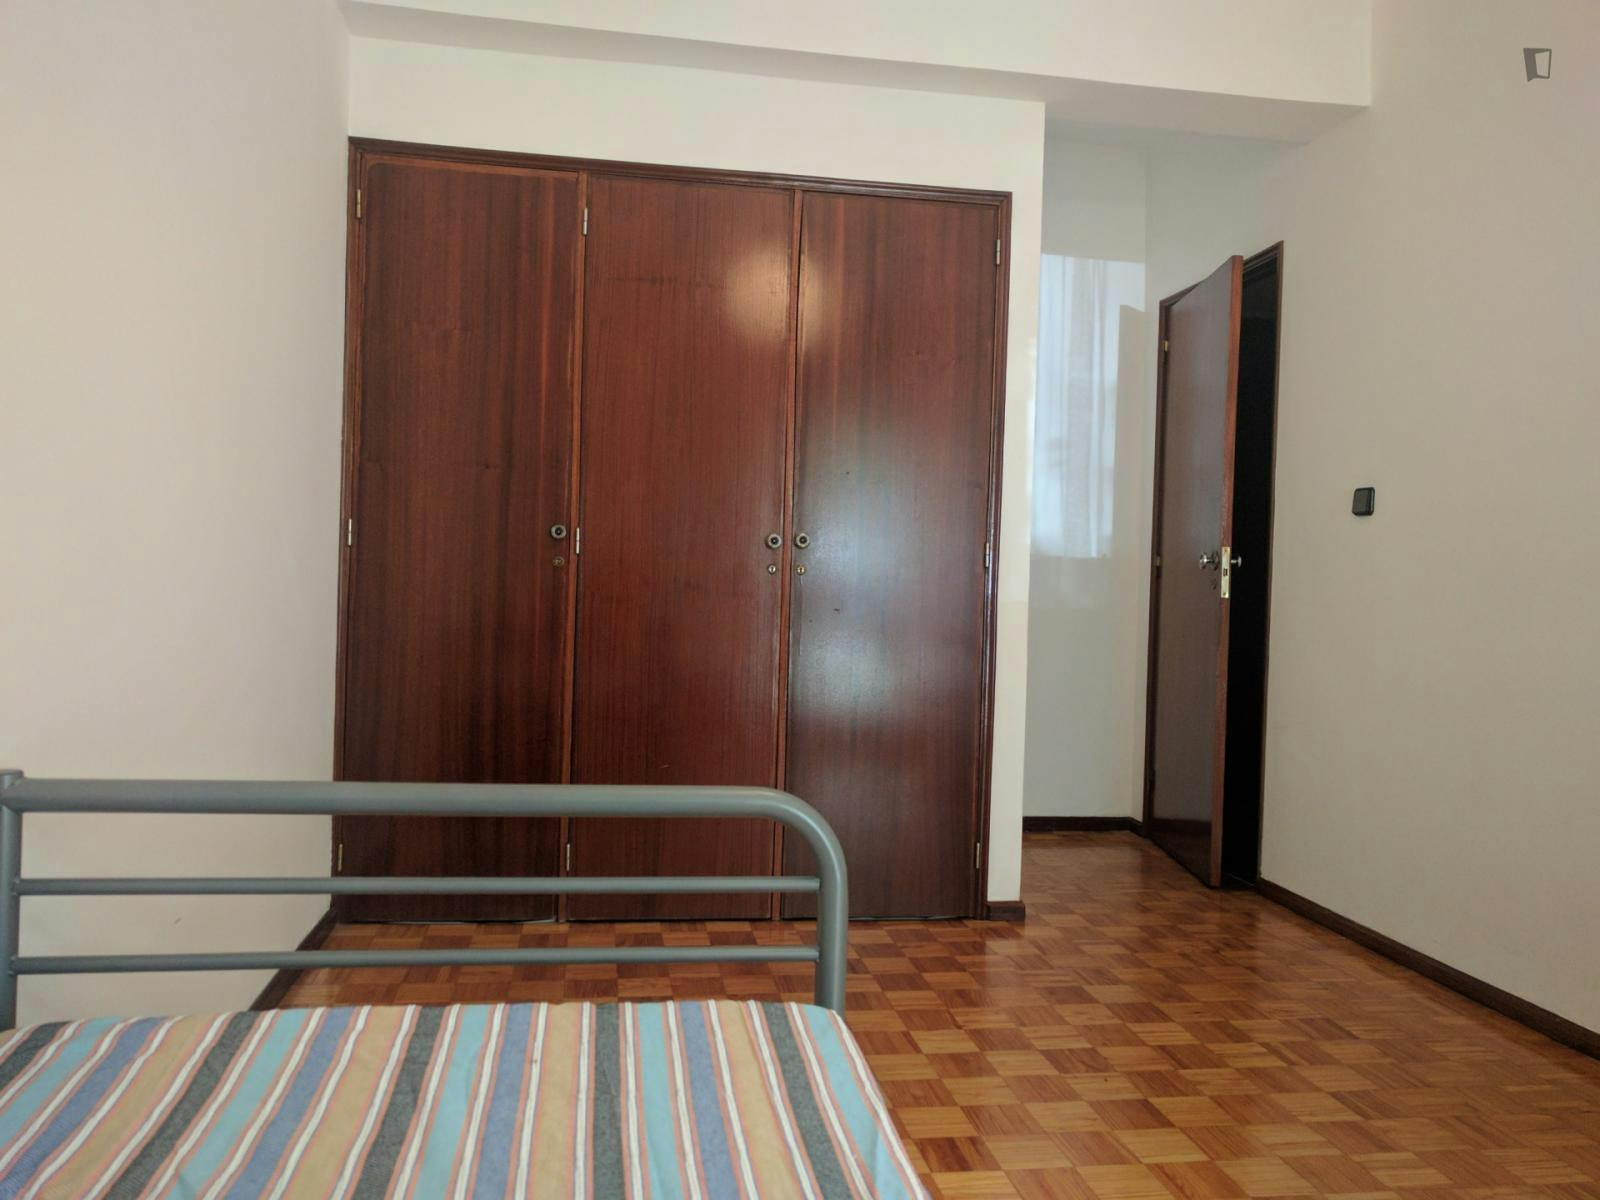 Very cosy single bedroom close to Instituto Politécnico de Castelo Branco